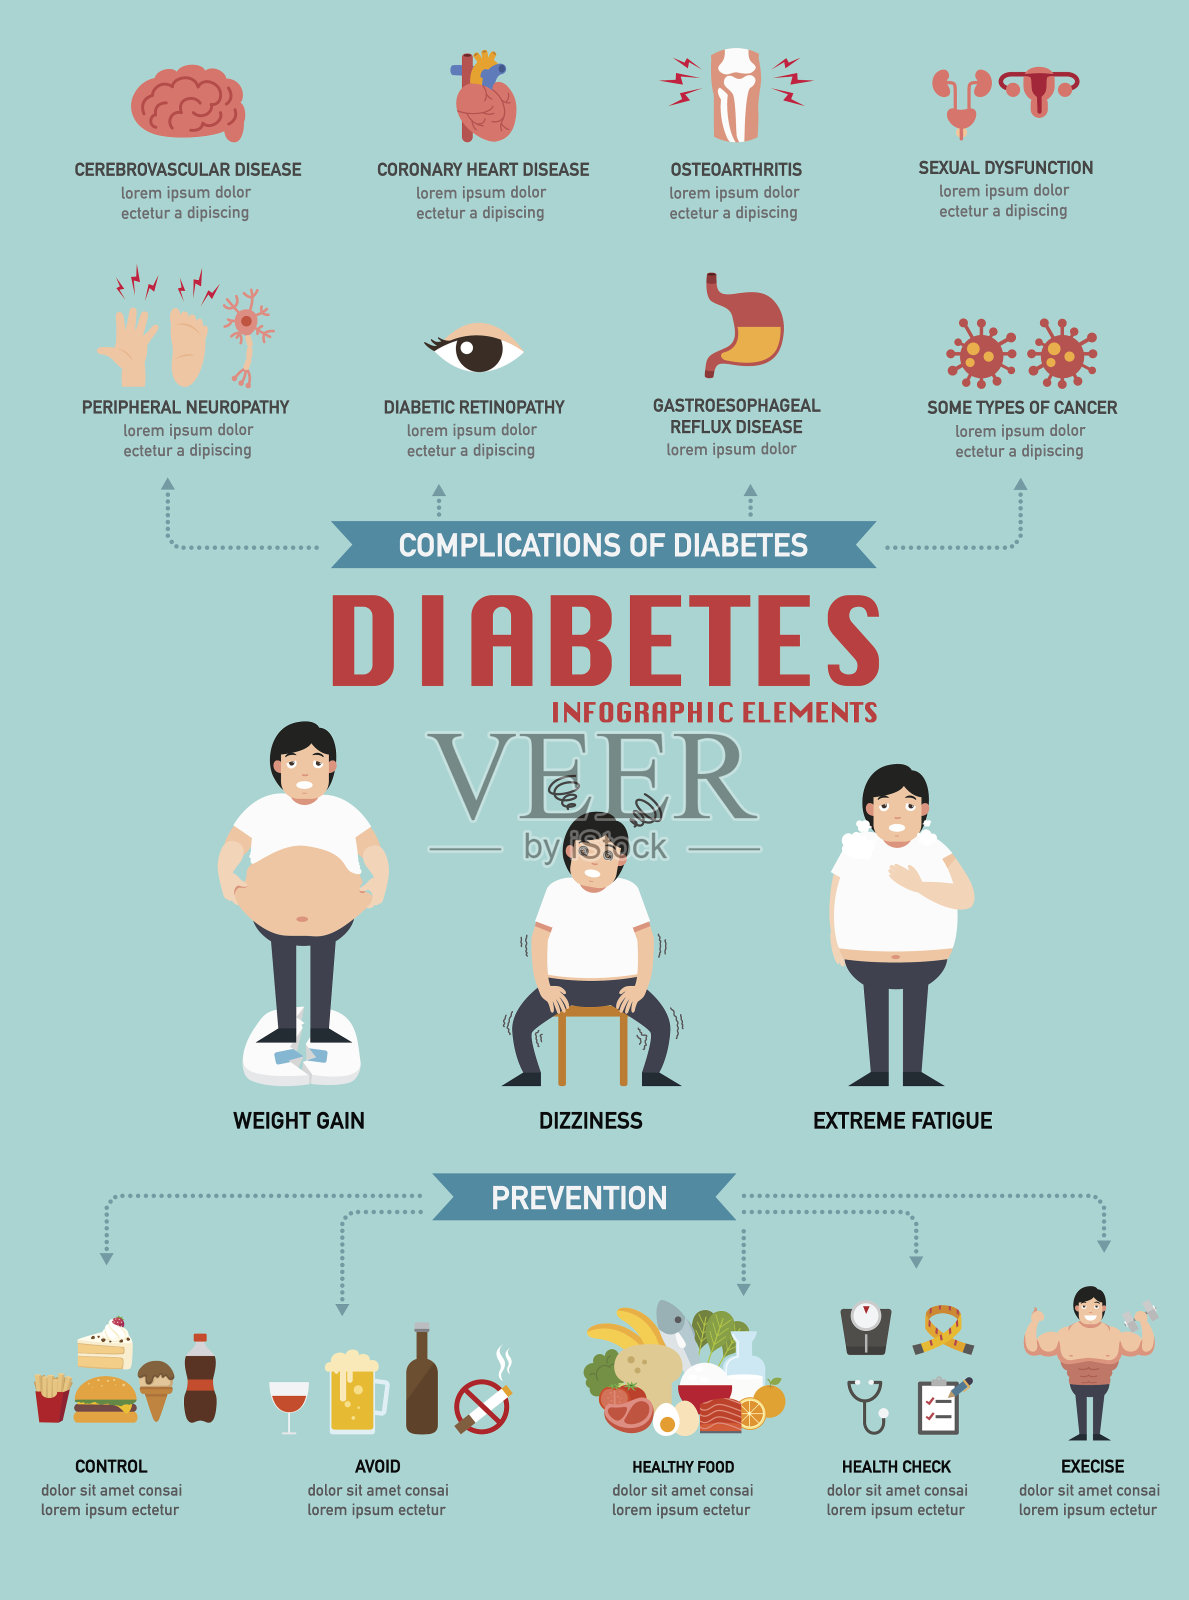 糖尿病疾病infographic.illustration设计模板素材